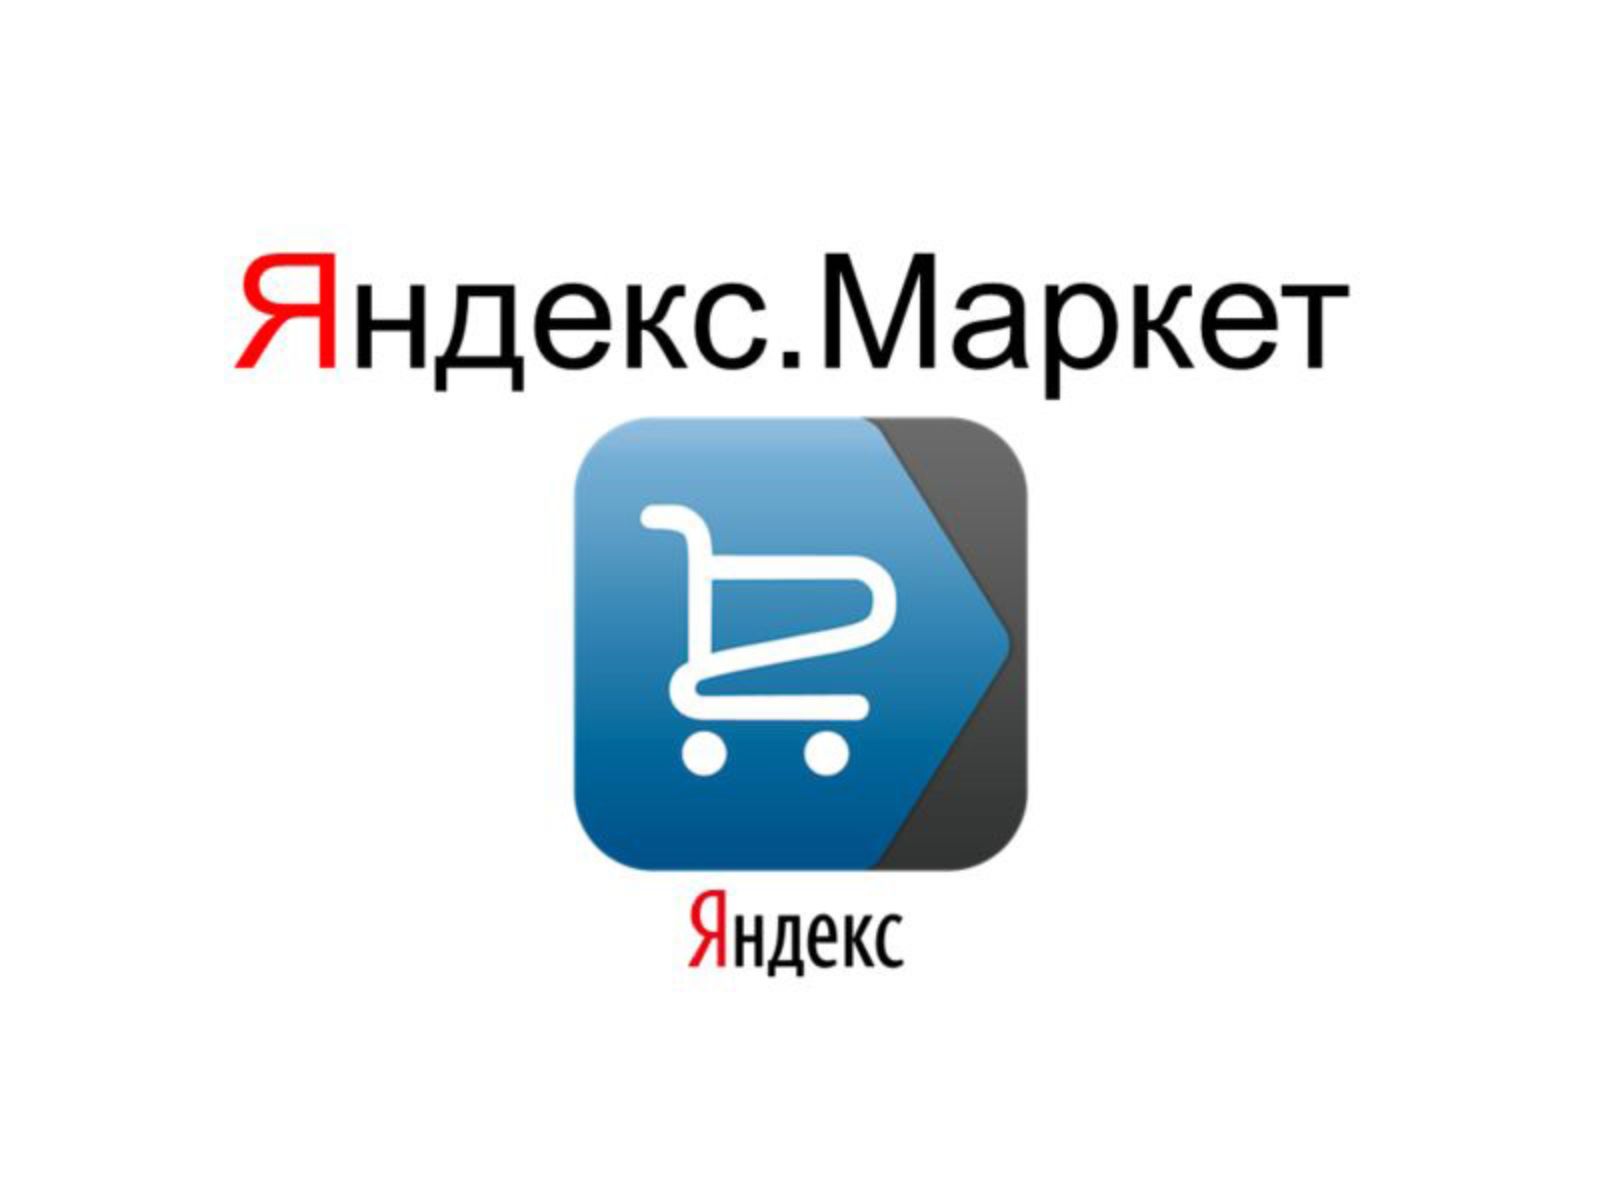 Яндекс позволит влиять на результаты ранжирования в Маркете